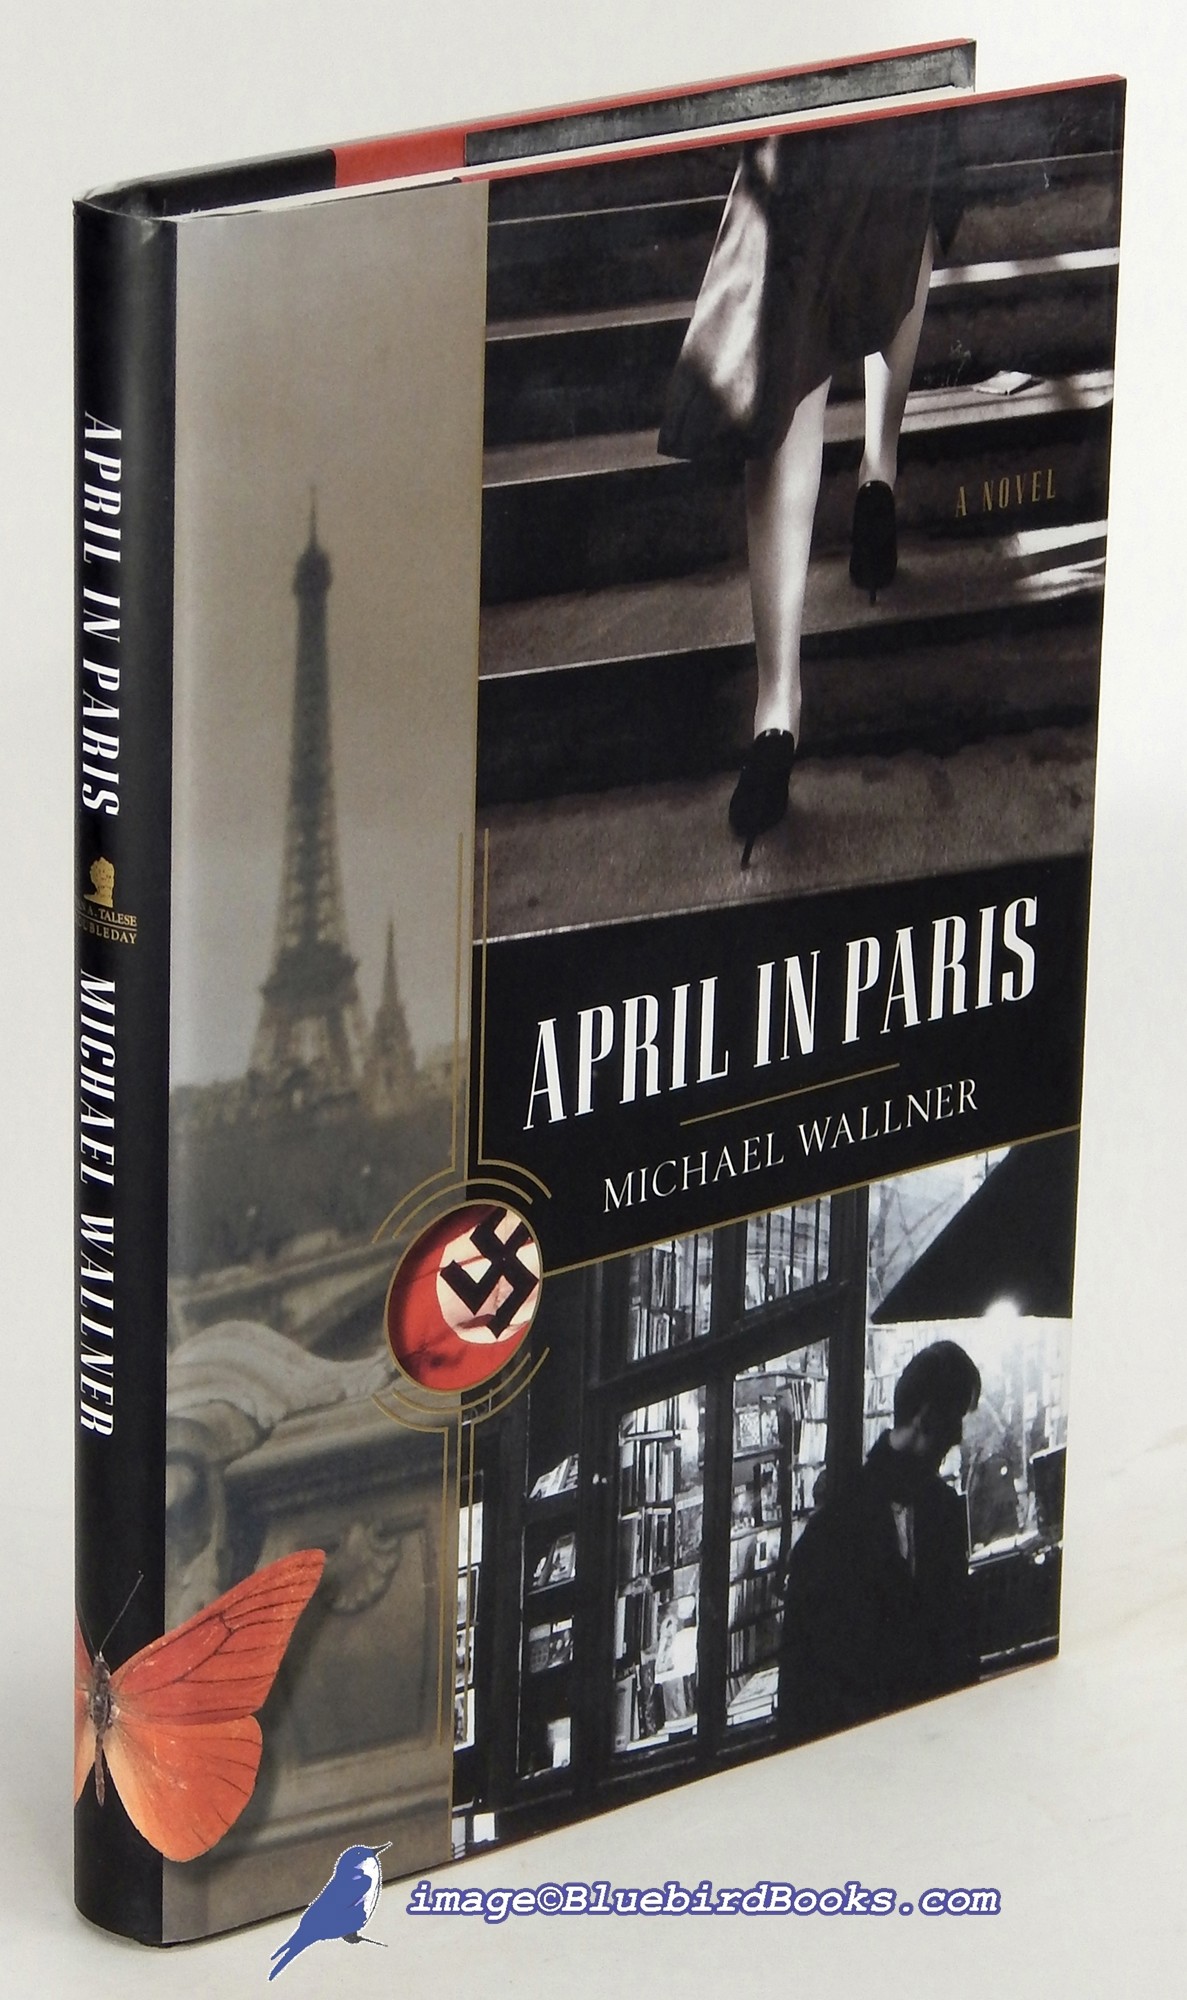 WALLNER, MICHAEL - April in Paris